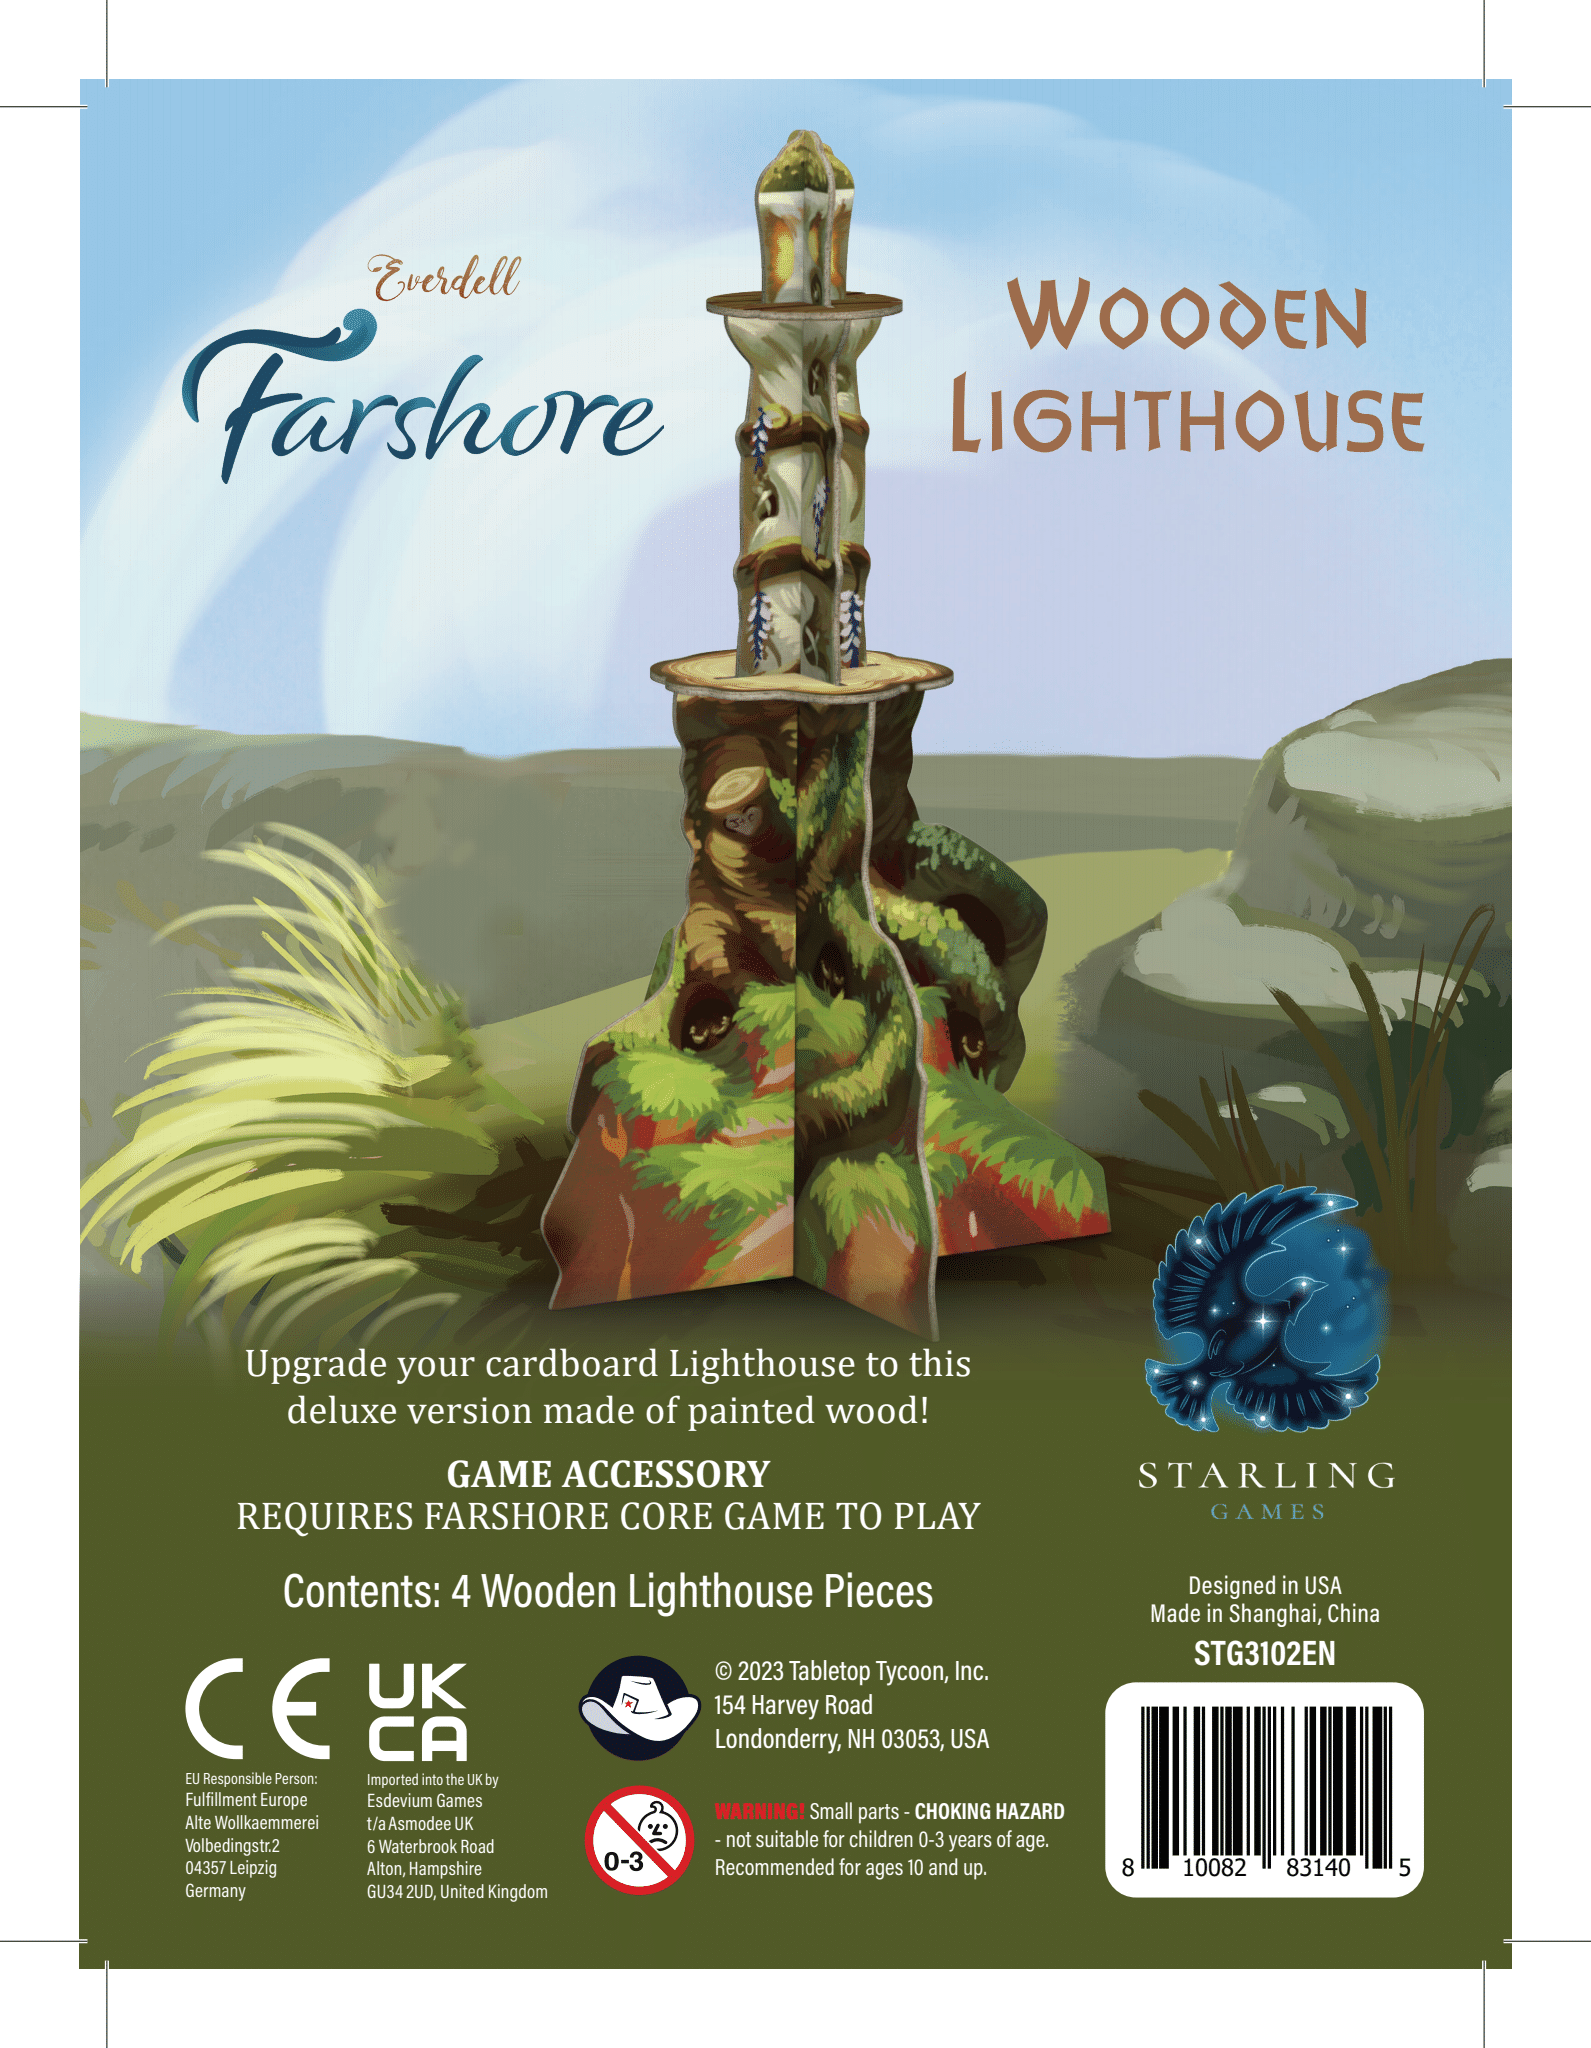 Everdell Farshore Wooden Lighthouse